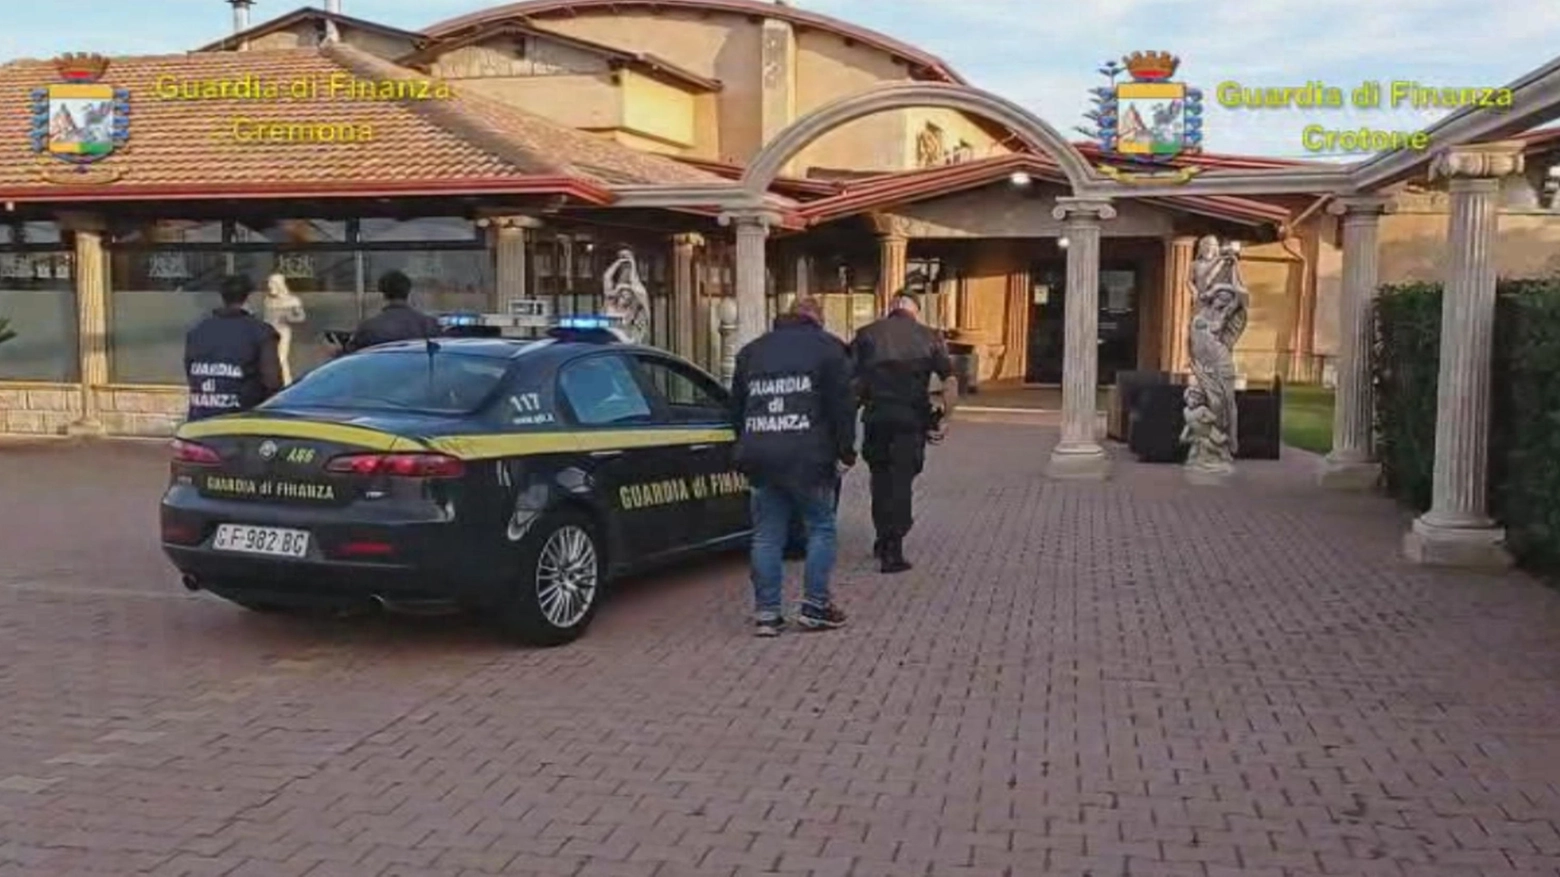 Cremona: confiscati beni per 17 milioni di euro a cosca della 'ndrangheta